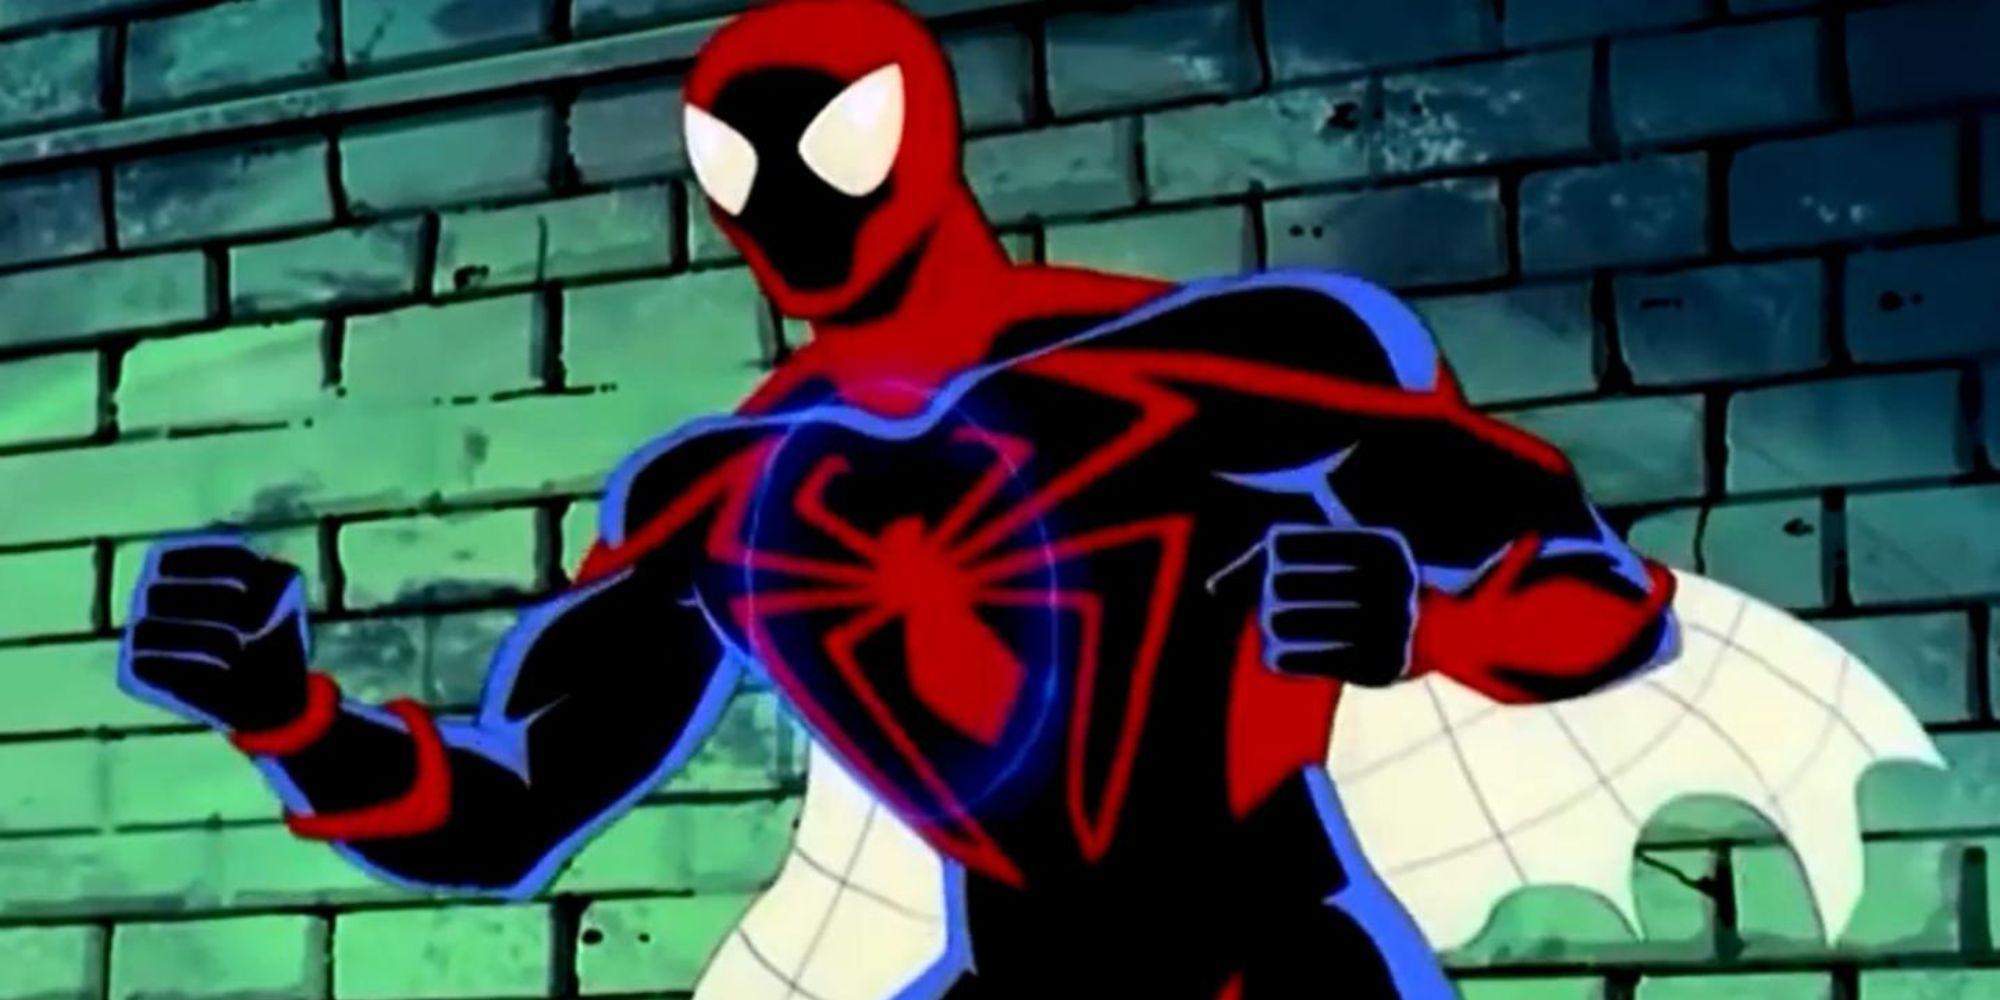 7 trajes do Homem-Aranha no novo trailer do Homem-Aranha: Através do SpiderVerse